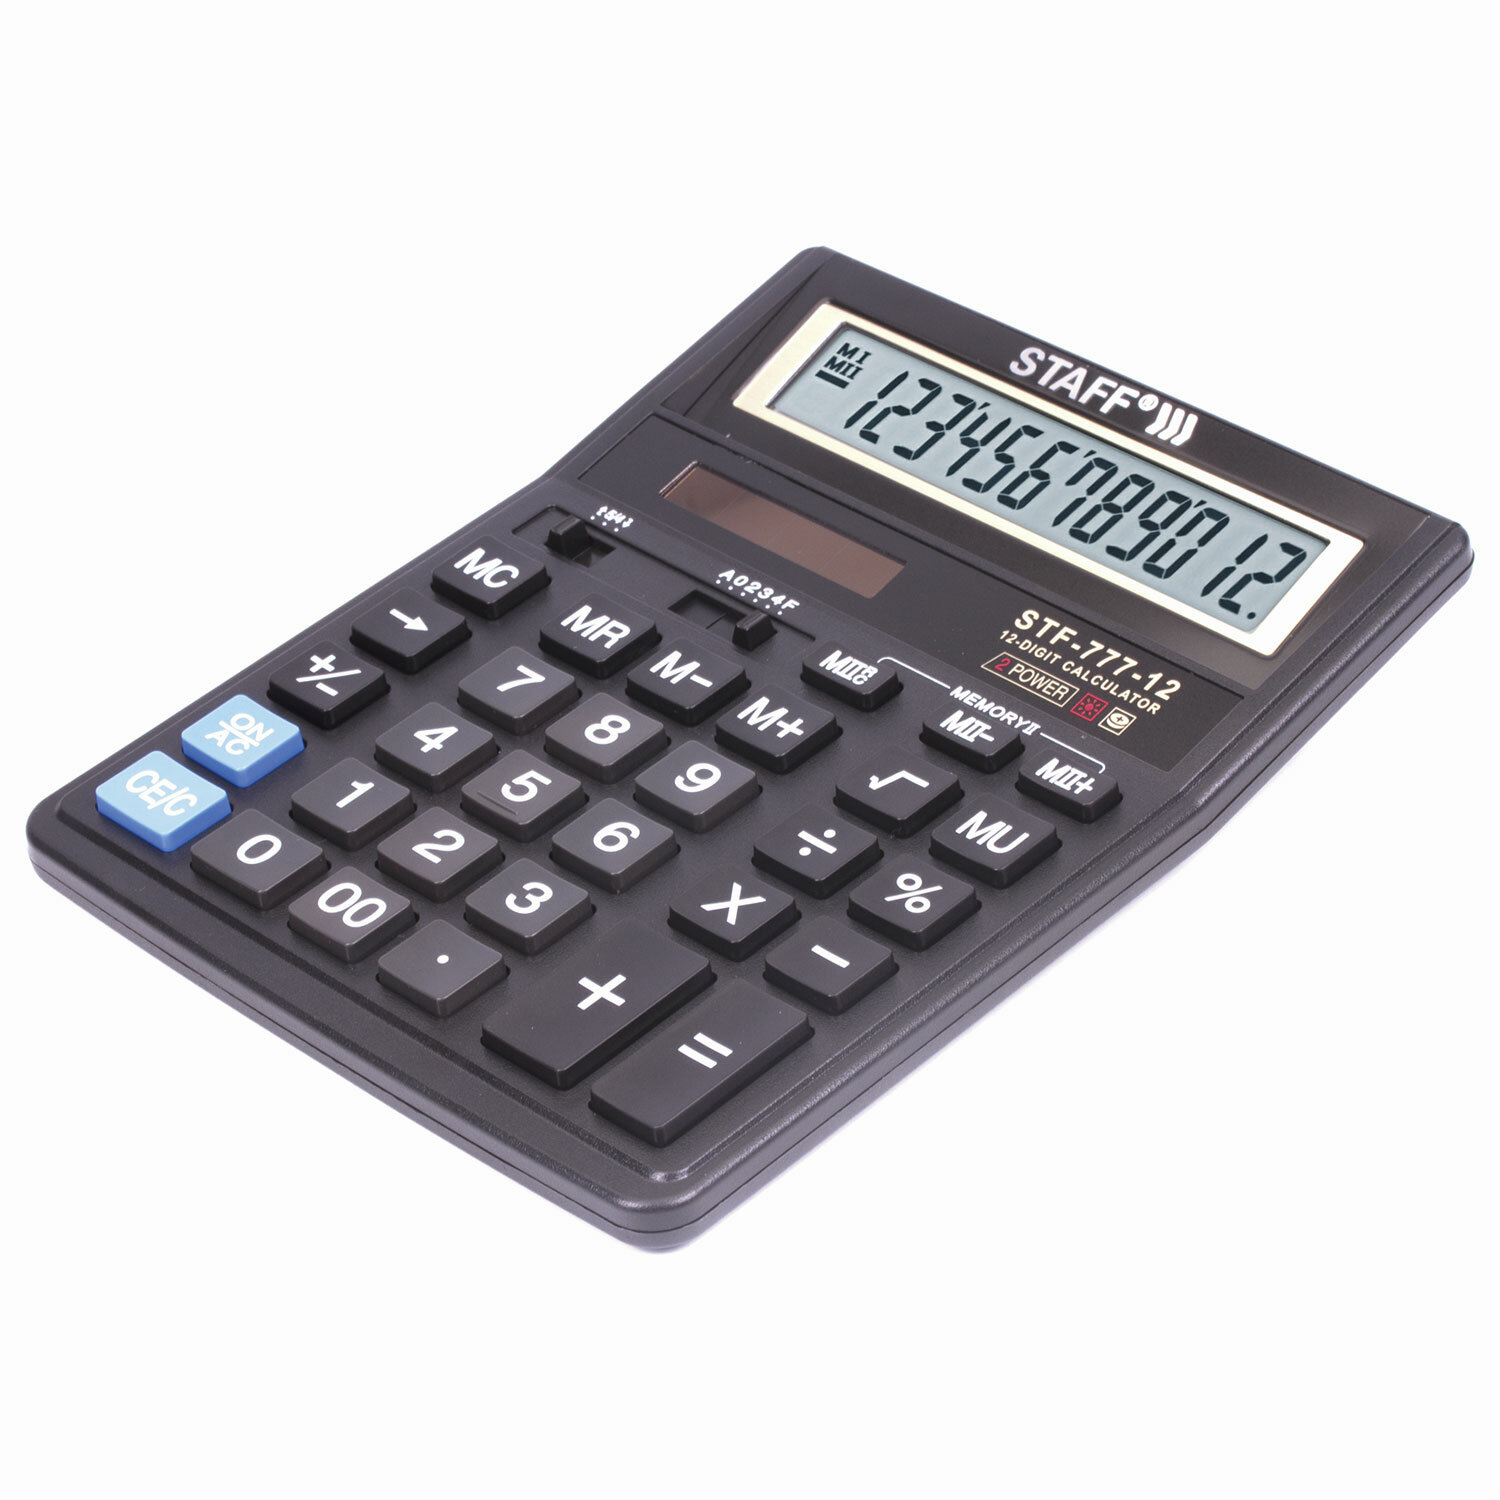 Калькулятор STAFF STF-777-12, 12 разрядов от интернет-магазина kancelyar.by